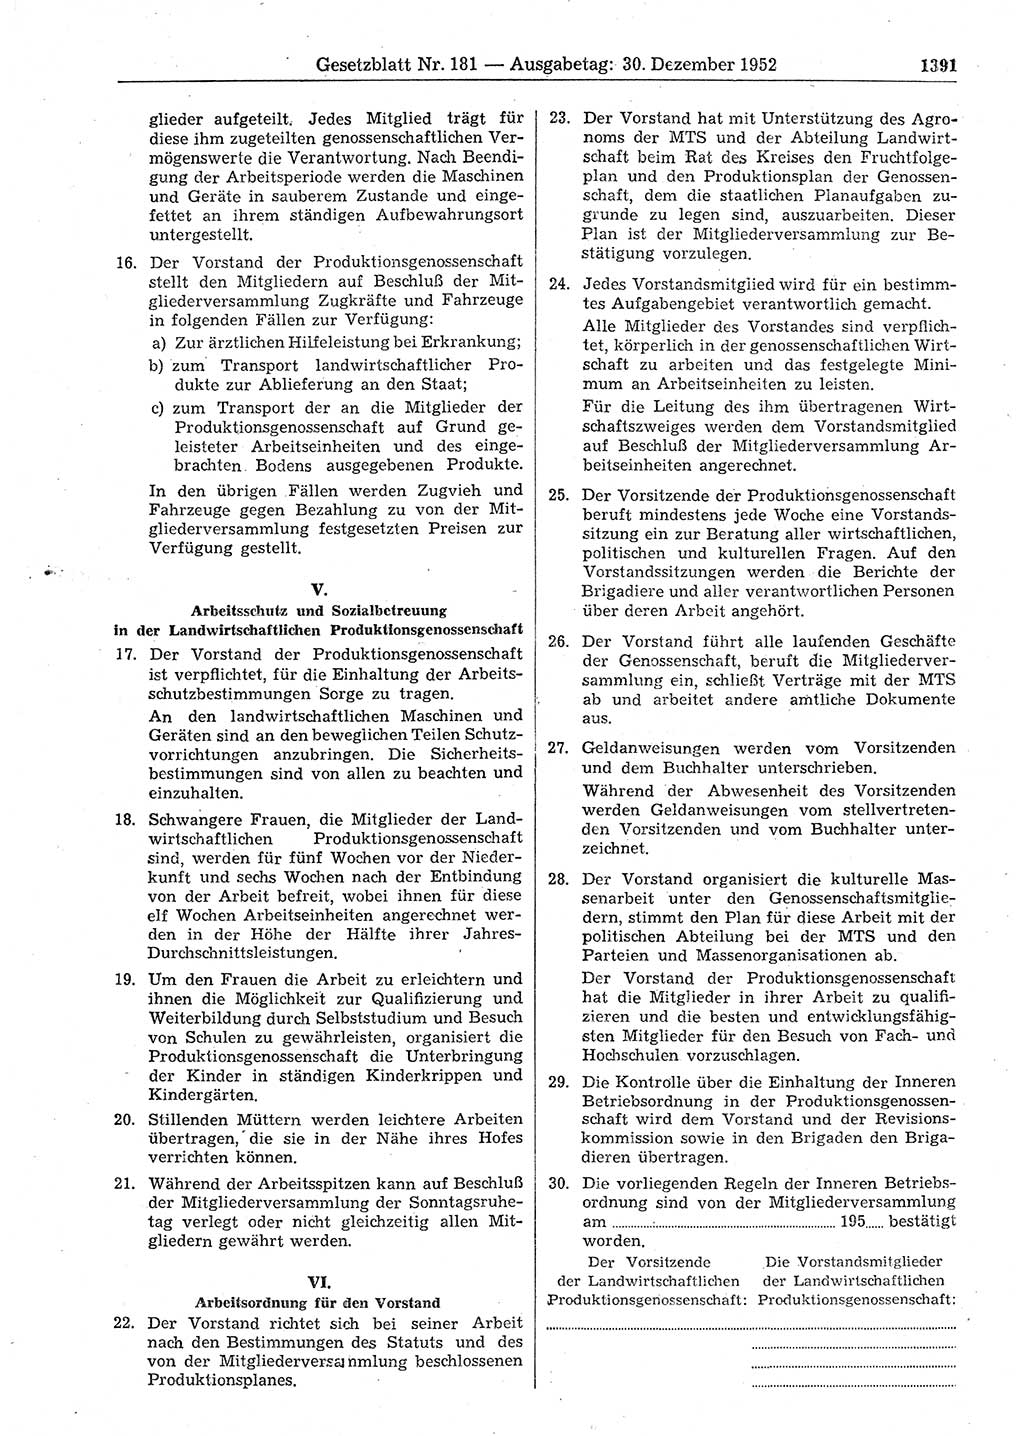 Gesetzblatt (GBl.) der Deutschen Demokratischen Republik (DDR) 1952, Seite 1391 (GBl. DDR 1952, S. 1391)